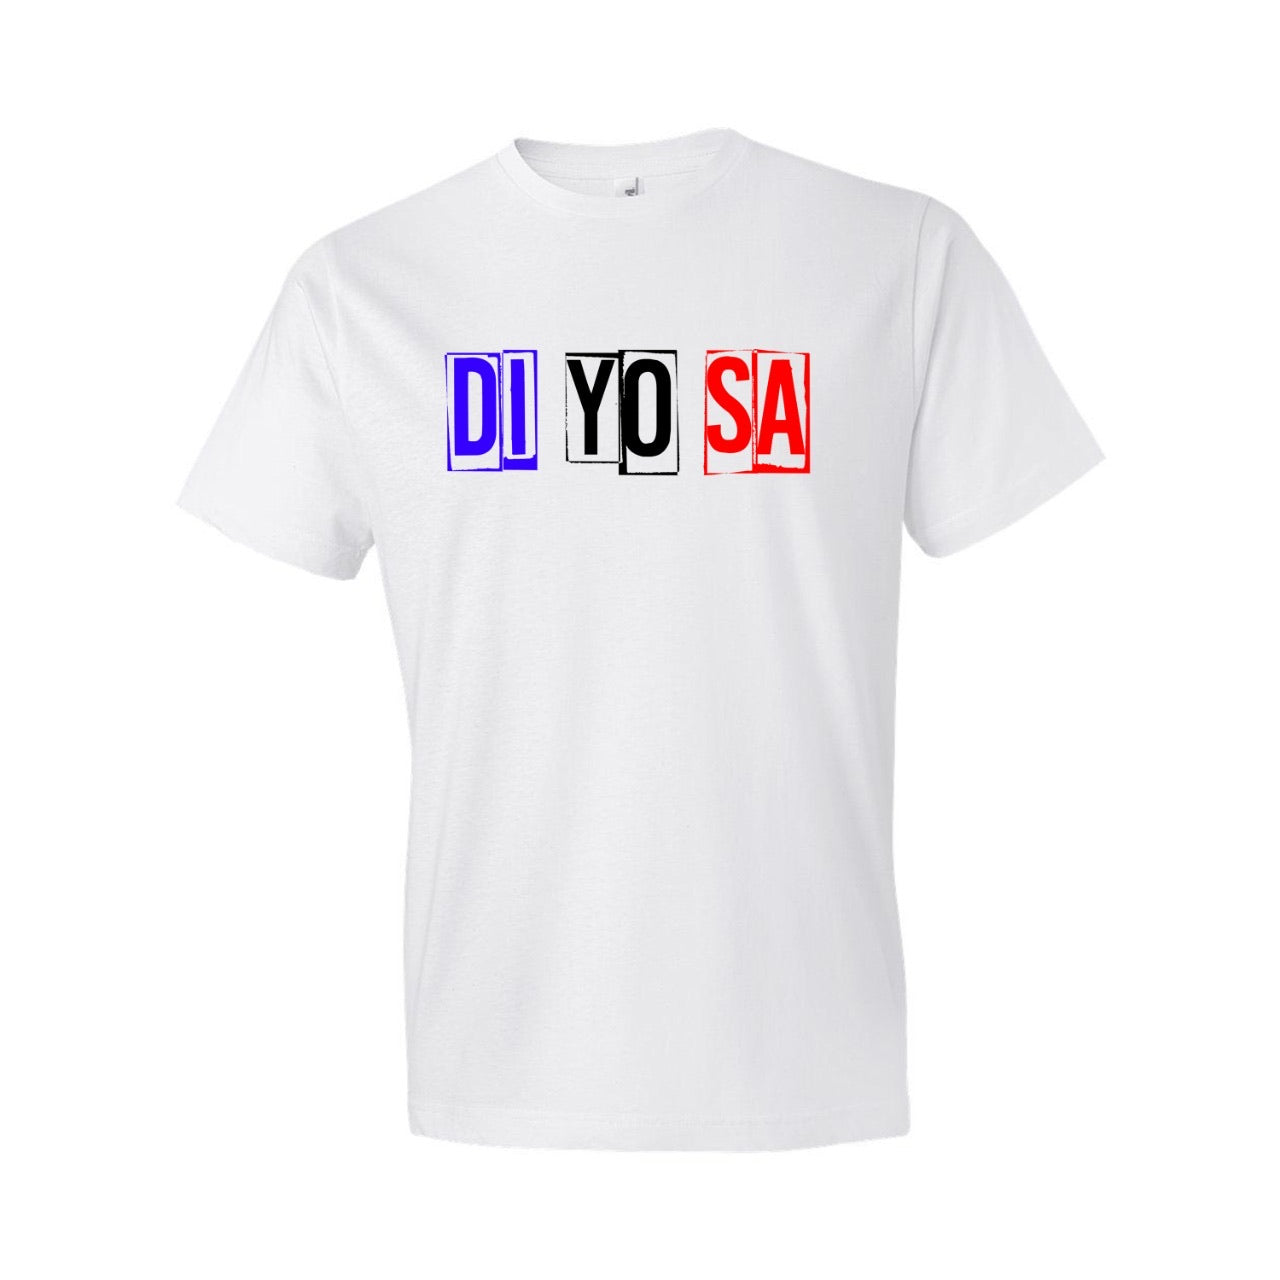 Di Yo Sa White T-Shirt